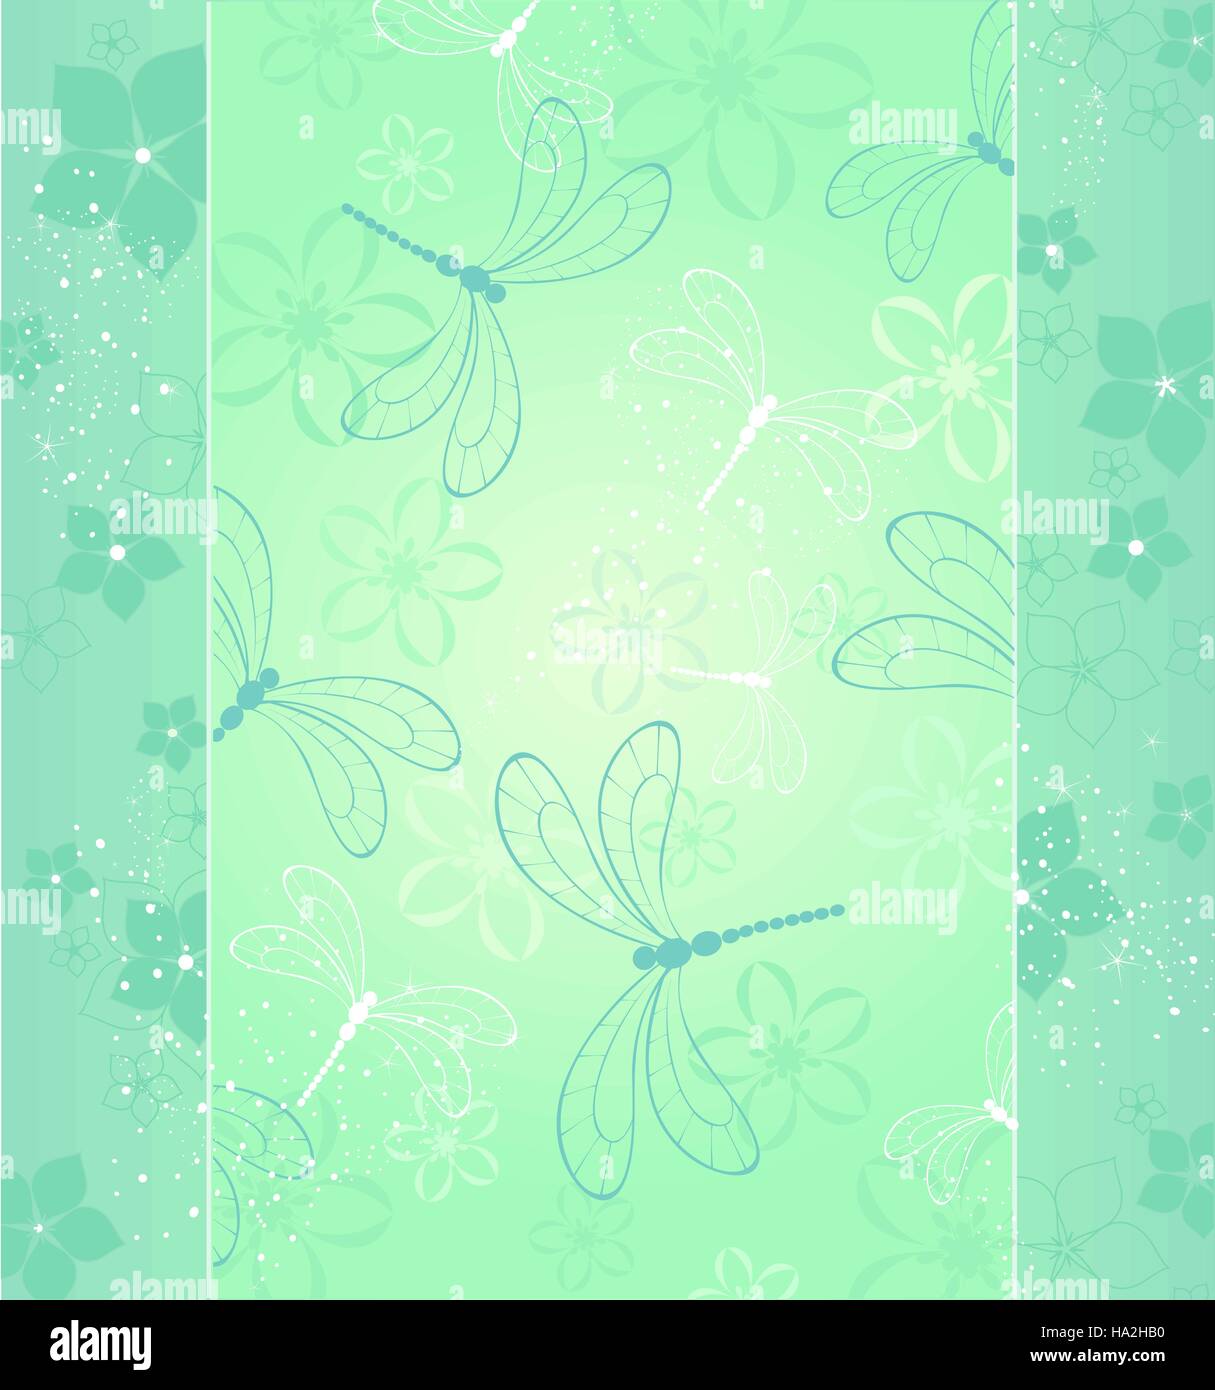 Beau design avec libellules et fleurs stylisées sur fond vert clair. Illustration de Vecteur